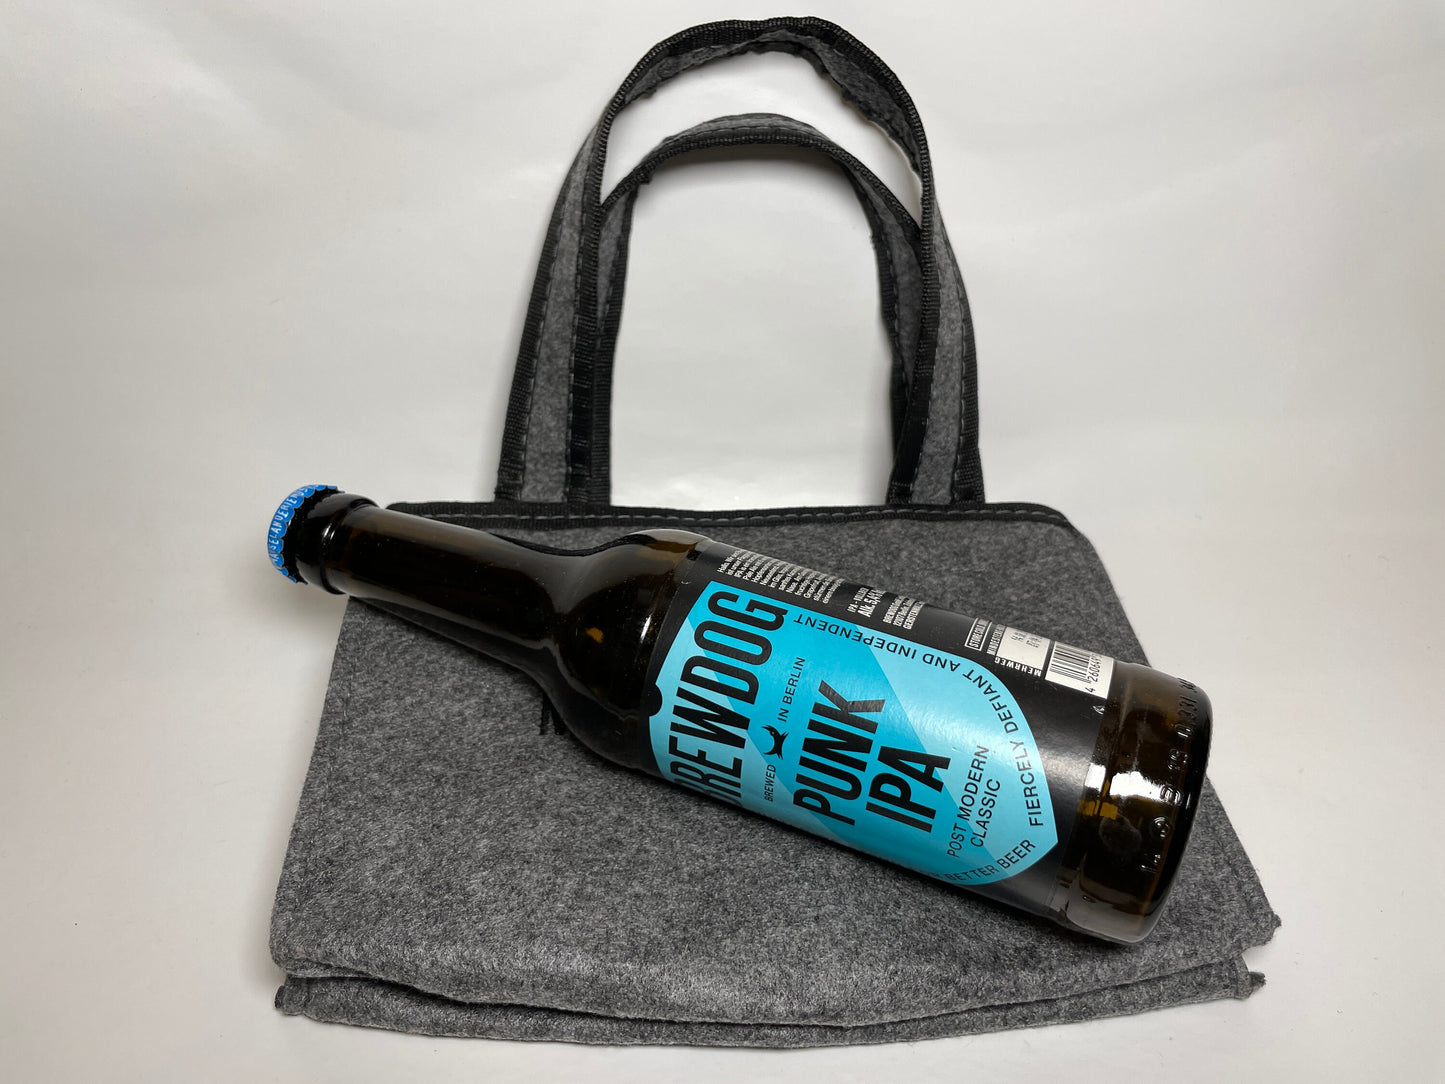 Flaschenträger für 6 Flaschen aus Filz - Männerhandtasche Bierflaschen Sixpack Tasche